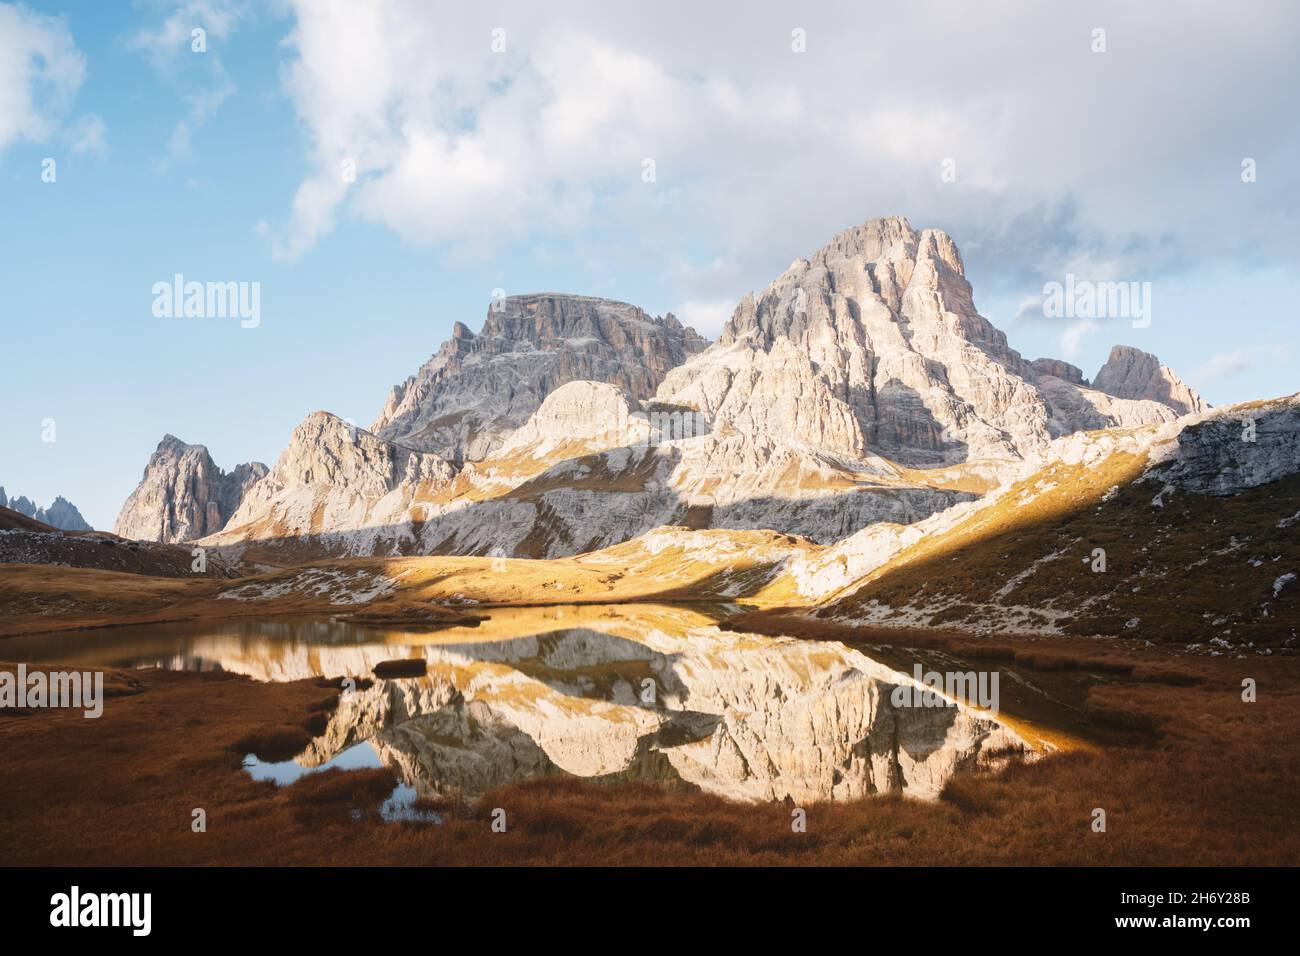 Klares Wasser des Alpensees Piani im Nationalpark Tre Cime Di Laveredo, Dolomiten, Italien. Malerische Landschaft mit Schusterplatte Berge, Orangengras und kleinen See im Herbst Dolomiten Alpen Stockfoto